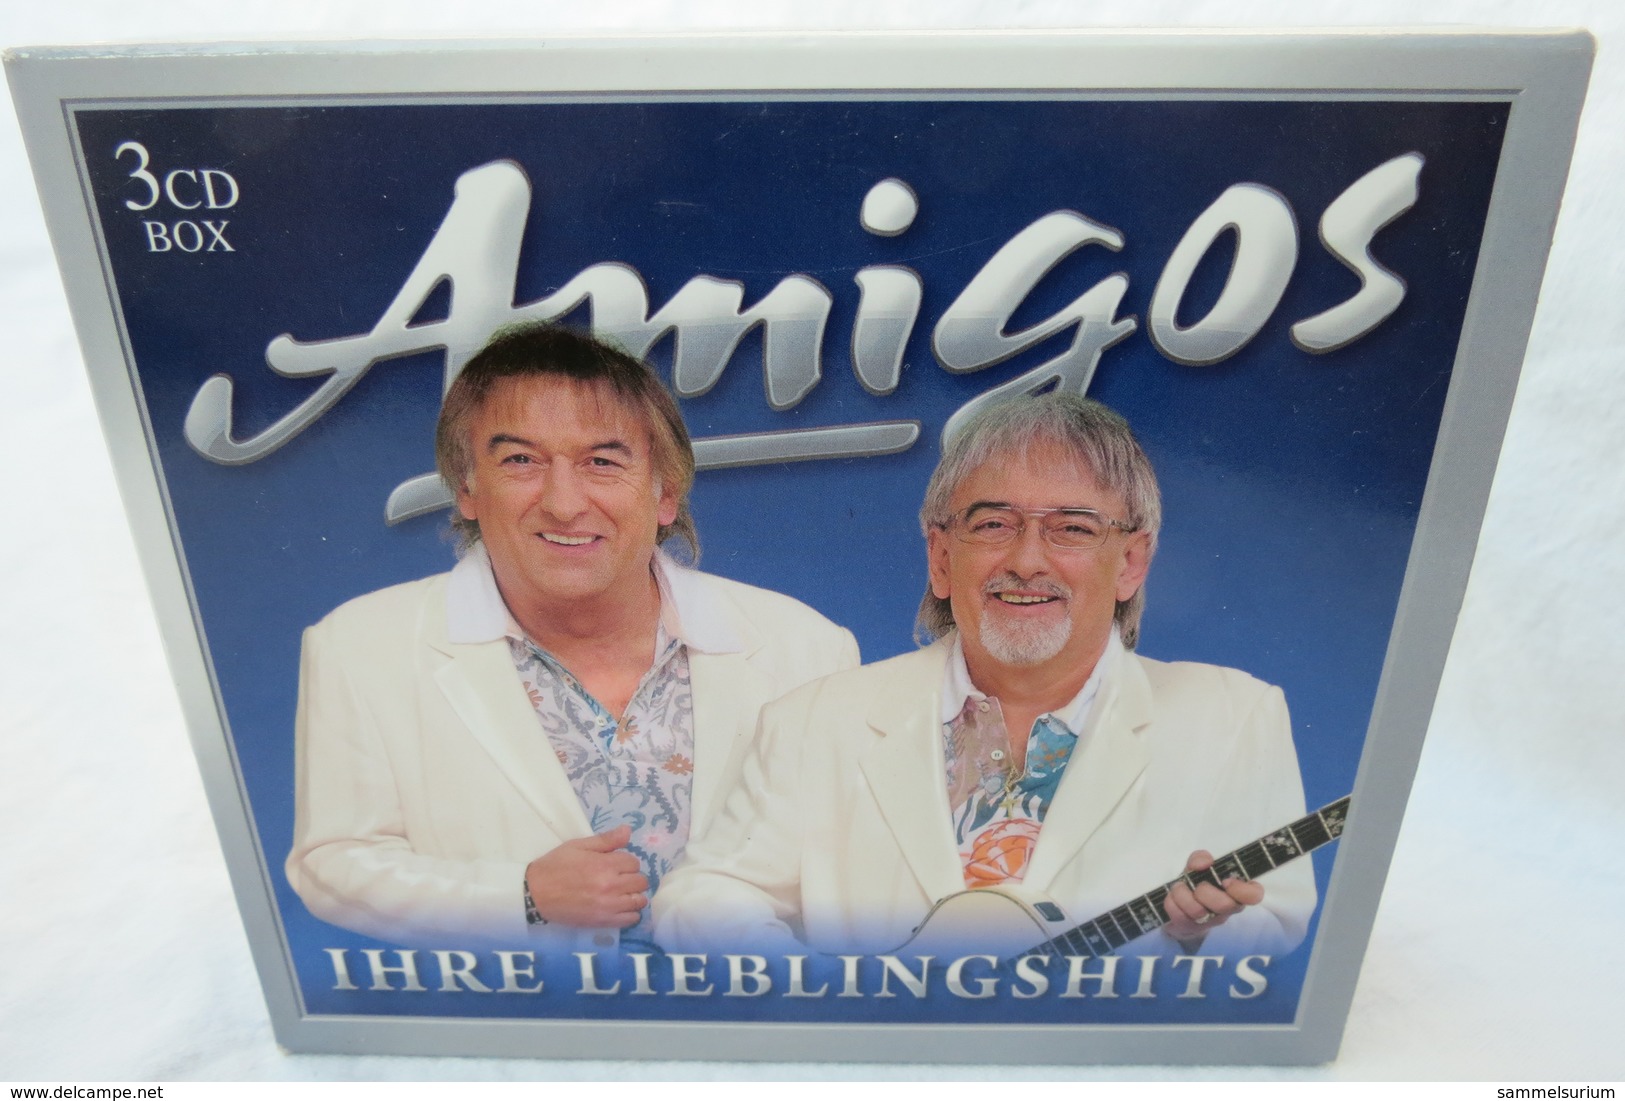 3 CDs Box "Amigos" Ihre Lieblingshits - Sonstige - Deutsche Musik